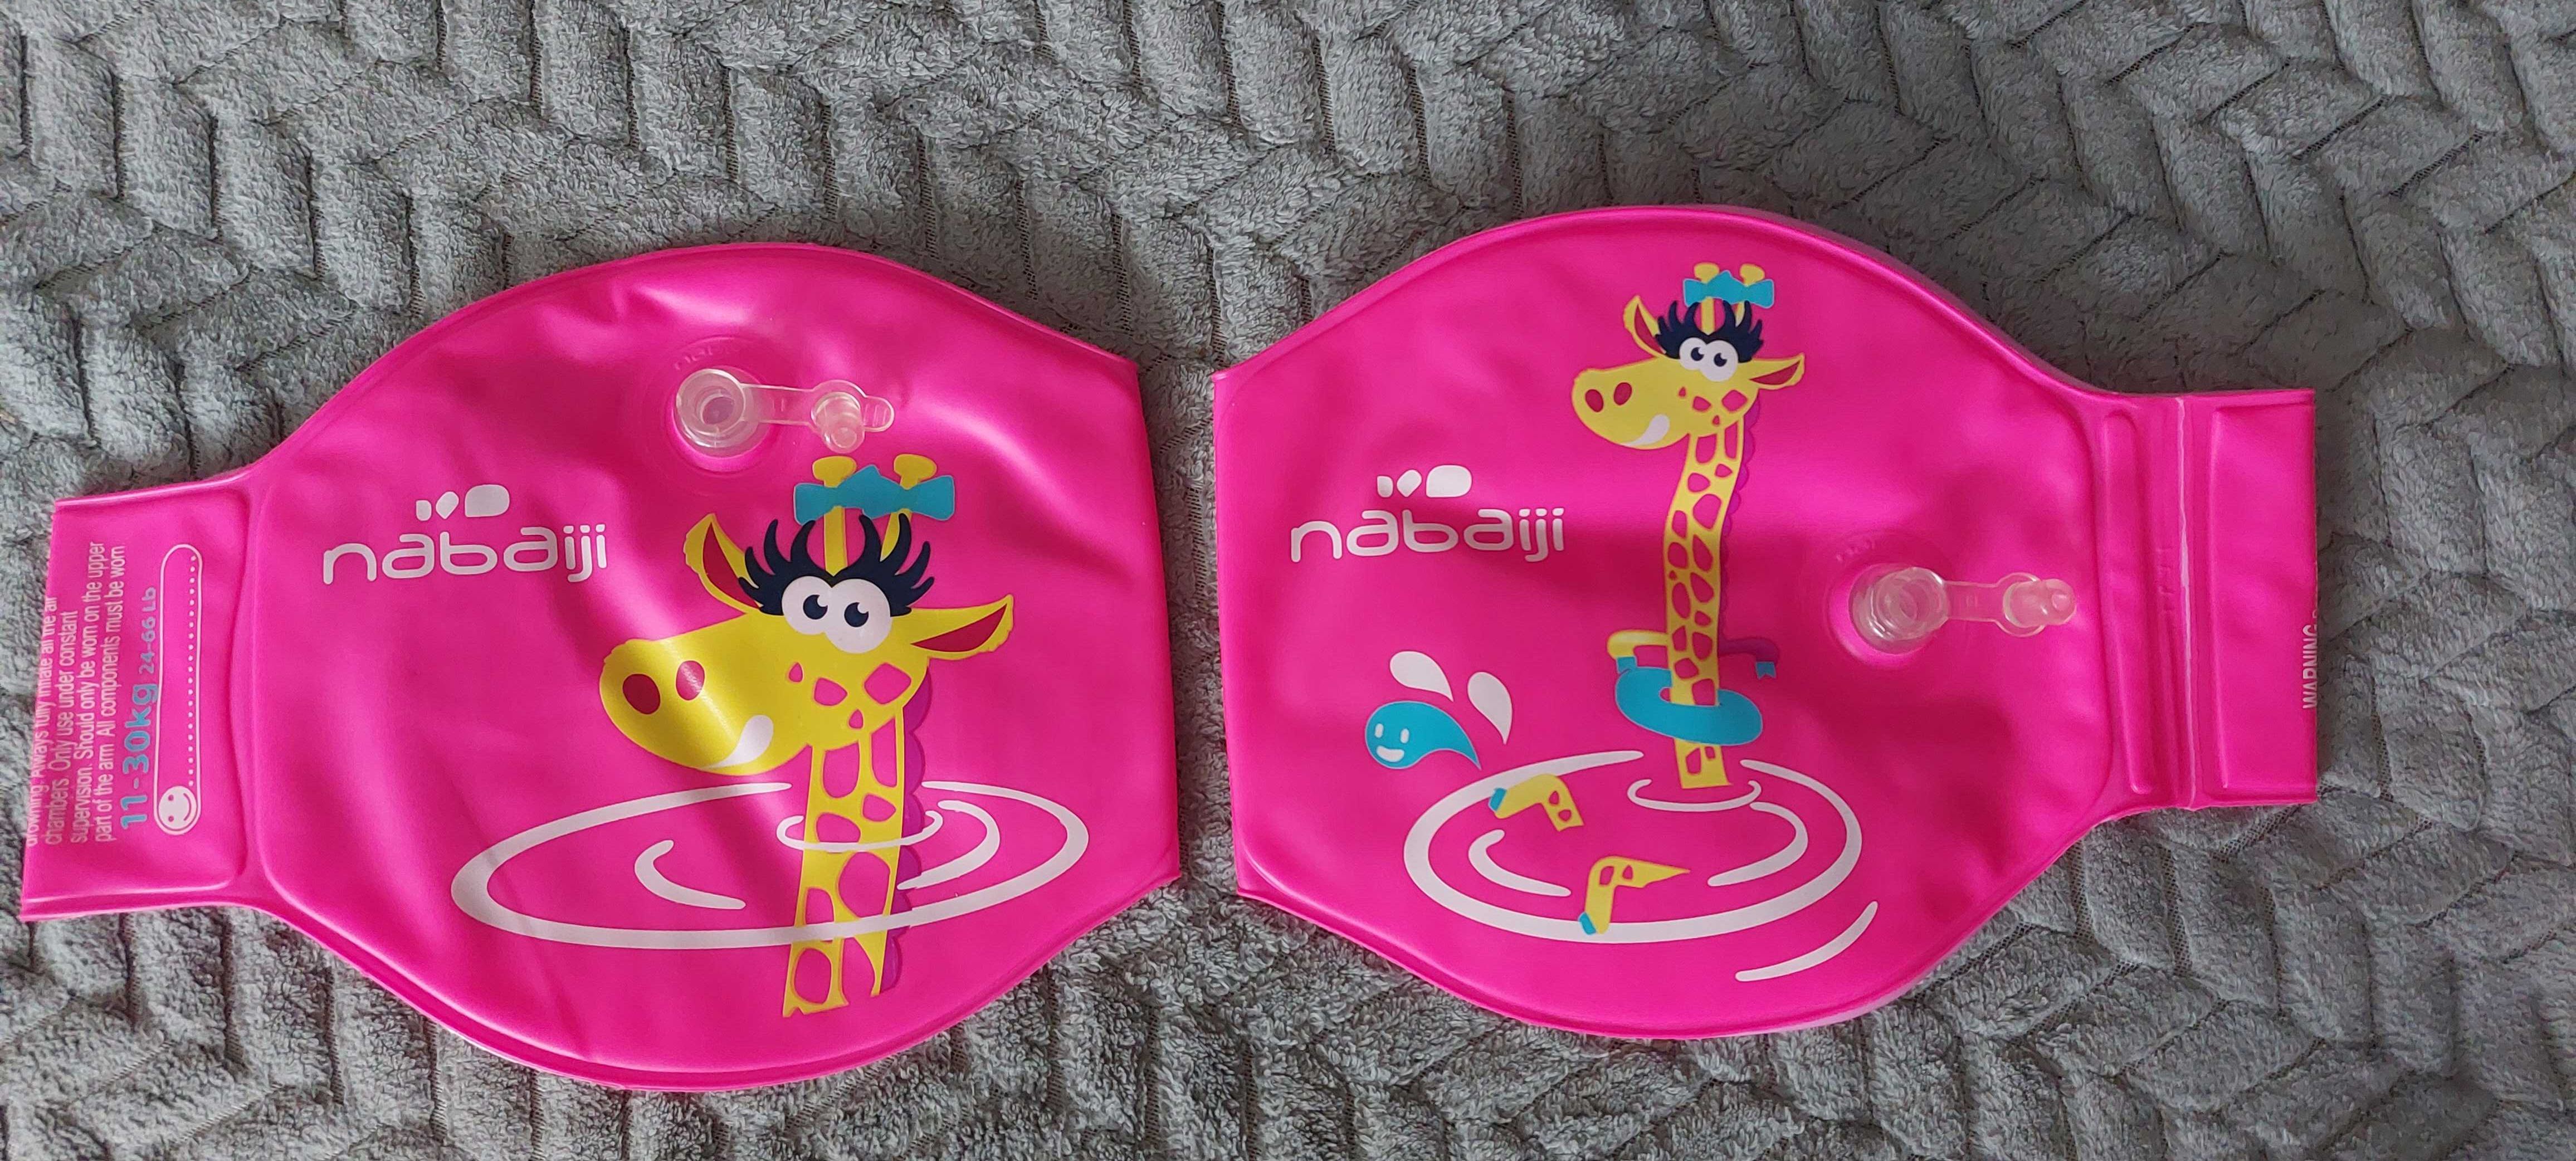 Rękawki pływackie pompowane dla dzieci Nabaiji 11 - 30 kg